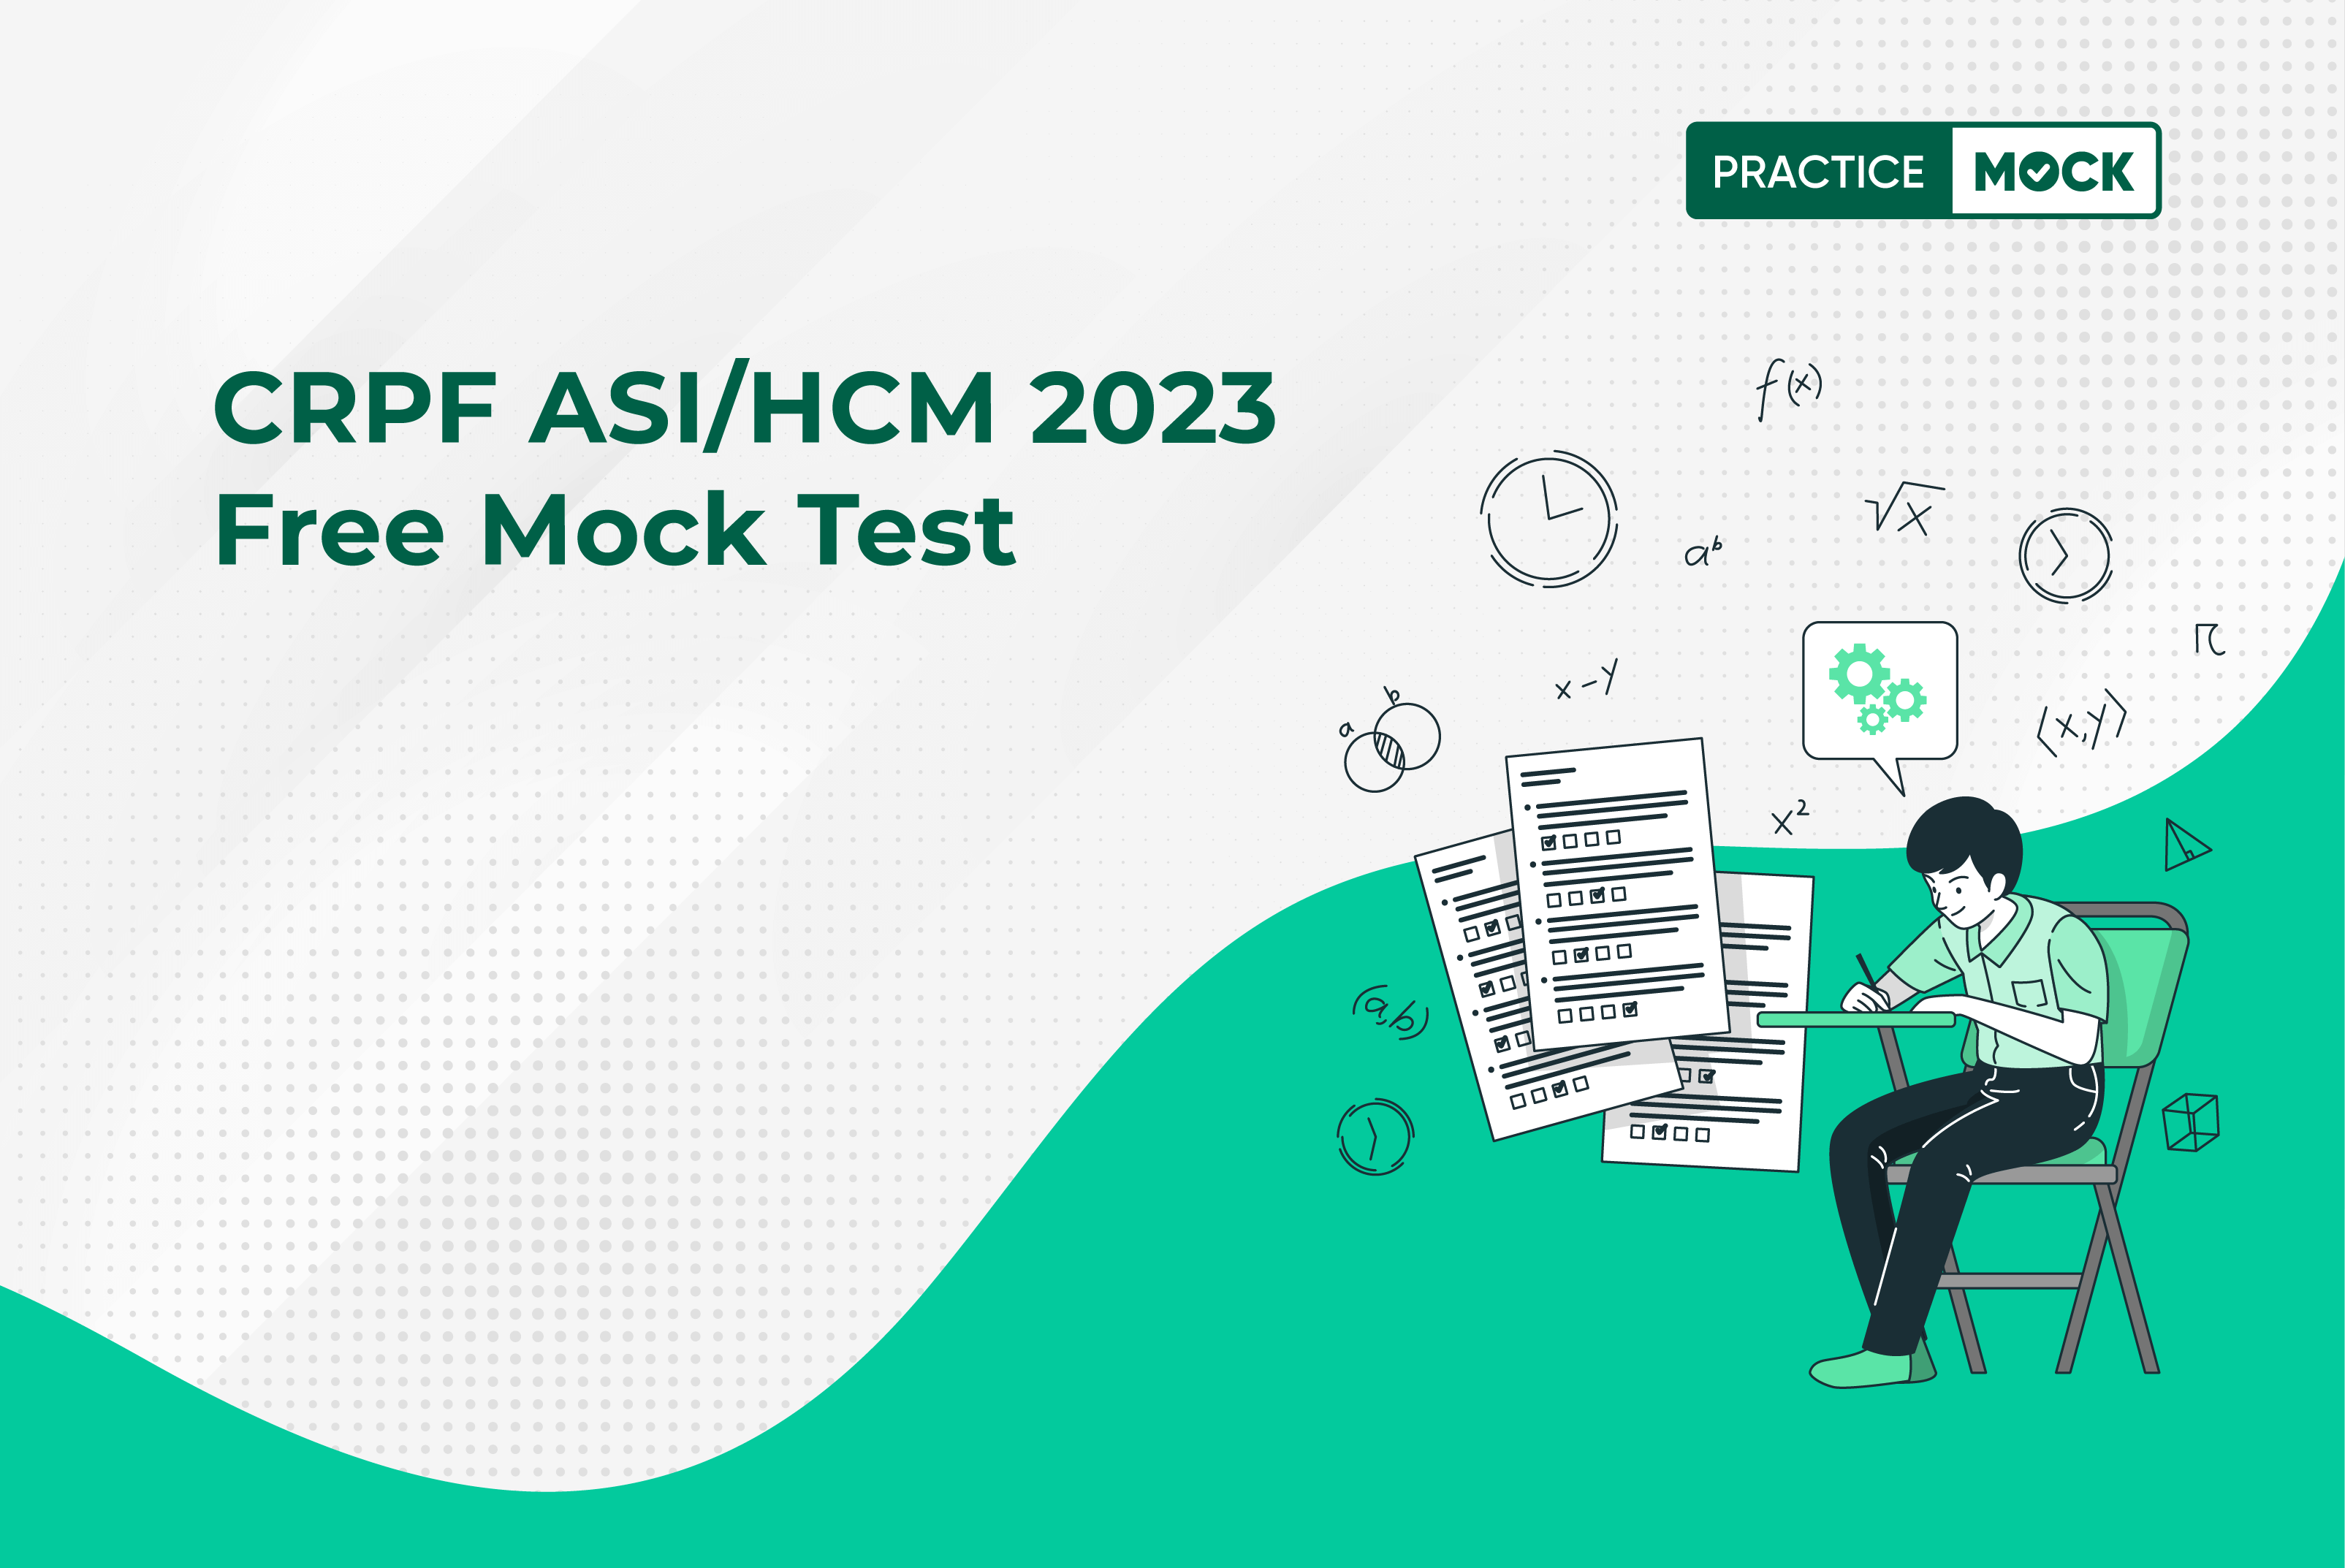 CRPF ASI/HCM Free Mock Test